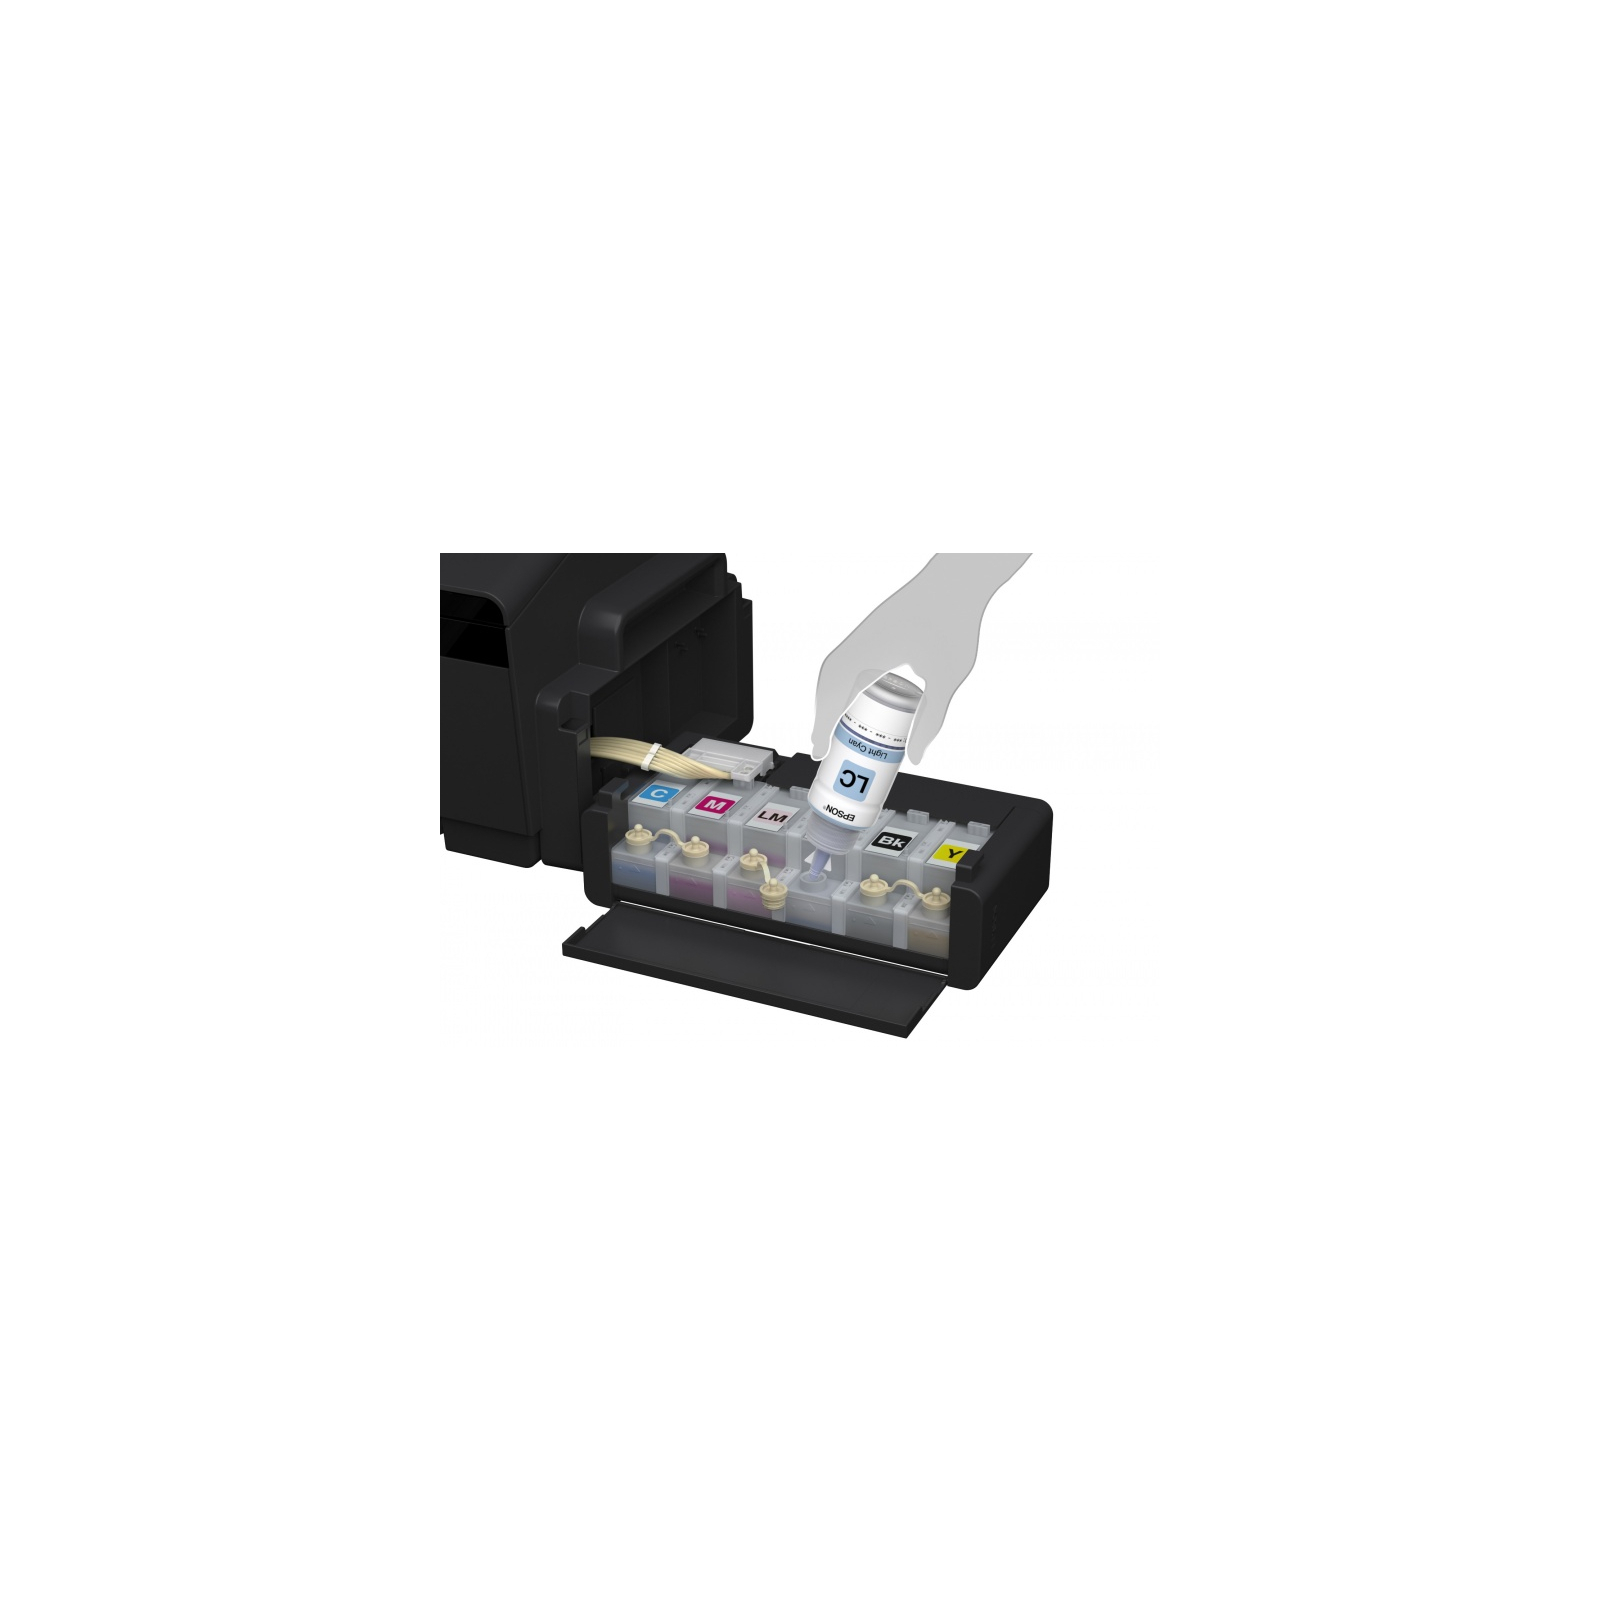 Струменевий принтер Epson L1800 (C11CD82402) зображення 5